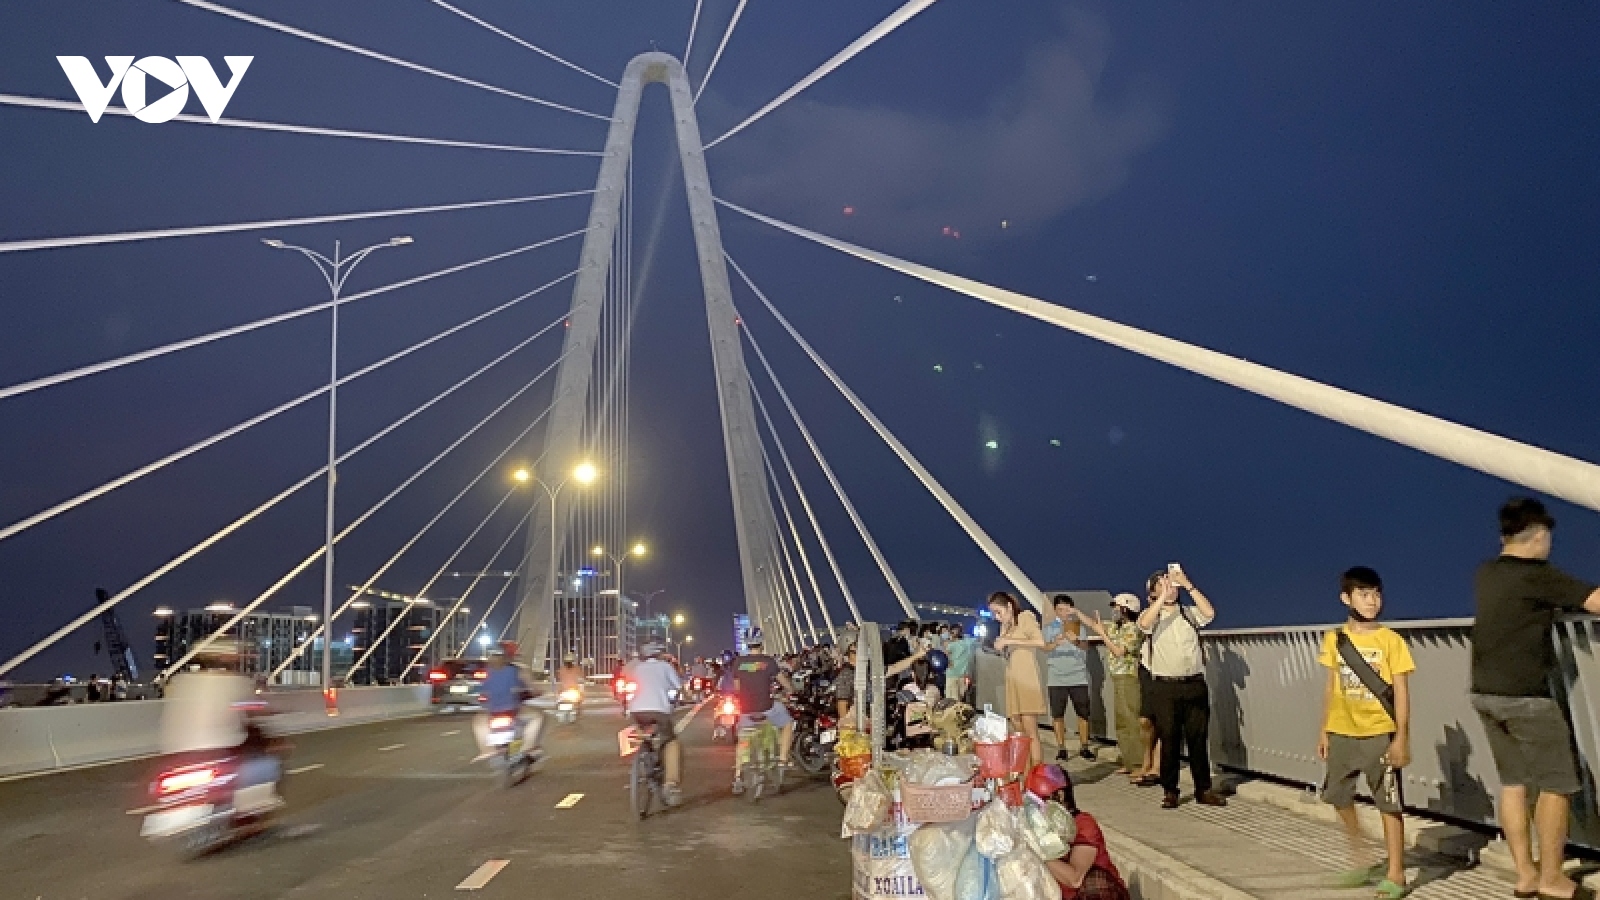 Dừng xe máy ngắm cảnh trên cầu Thủ Thiêm 2 có thể bị phạt 600.000 đồng